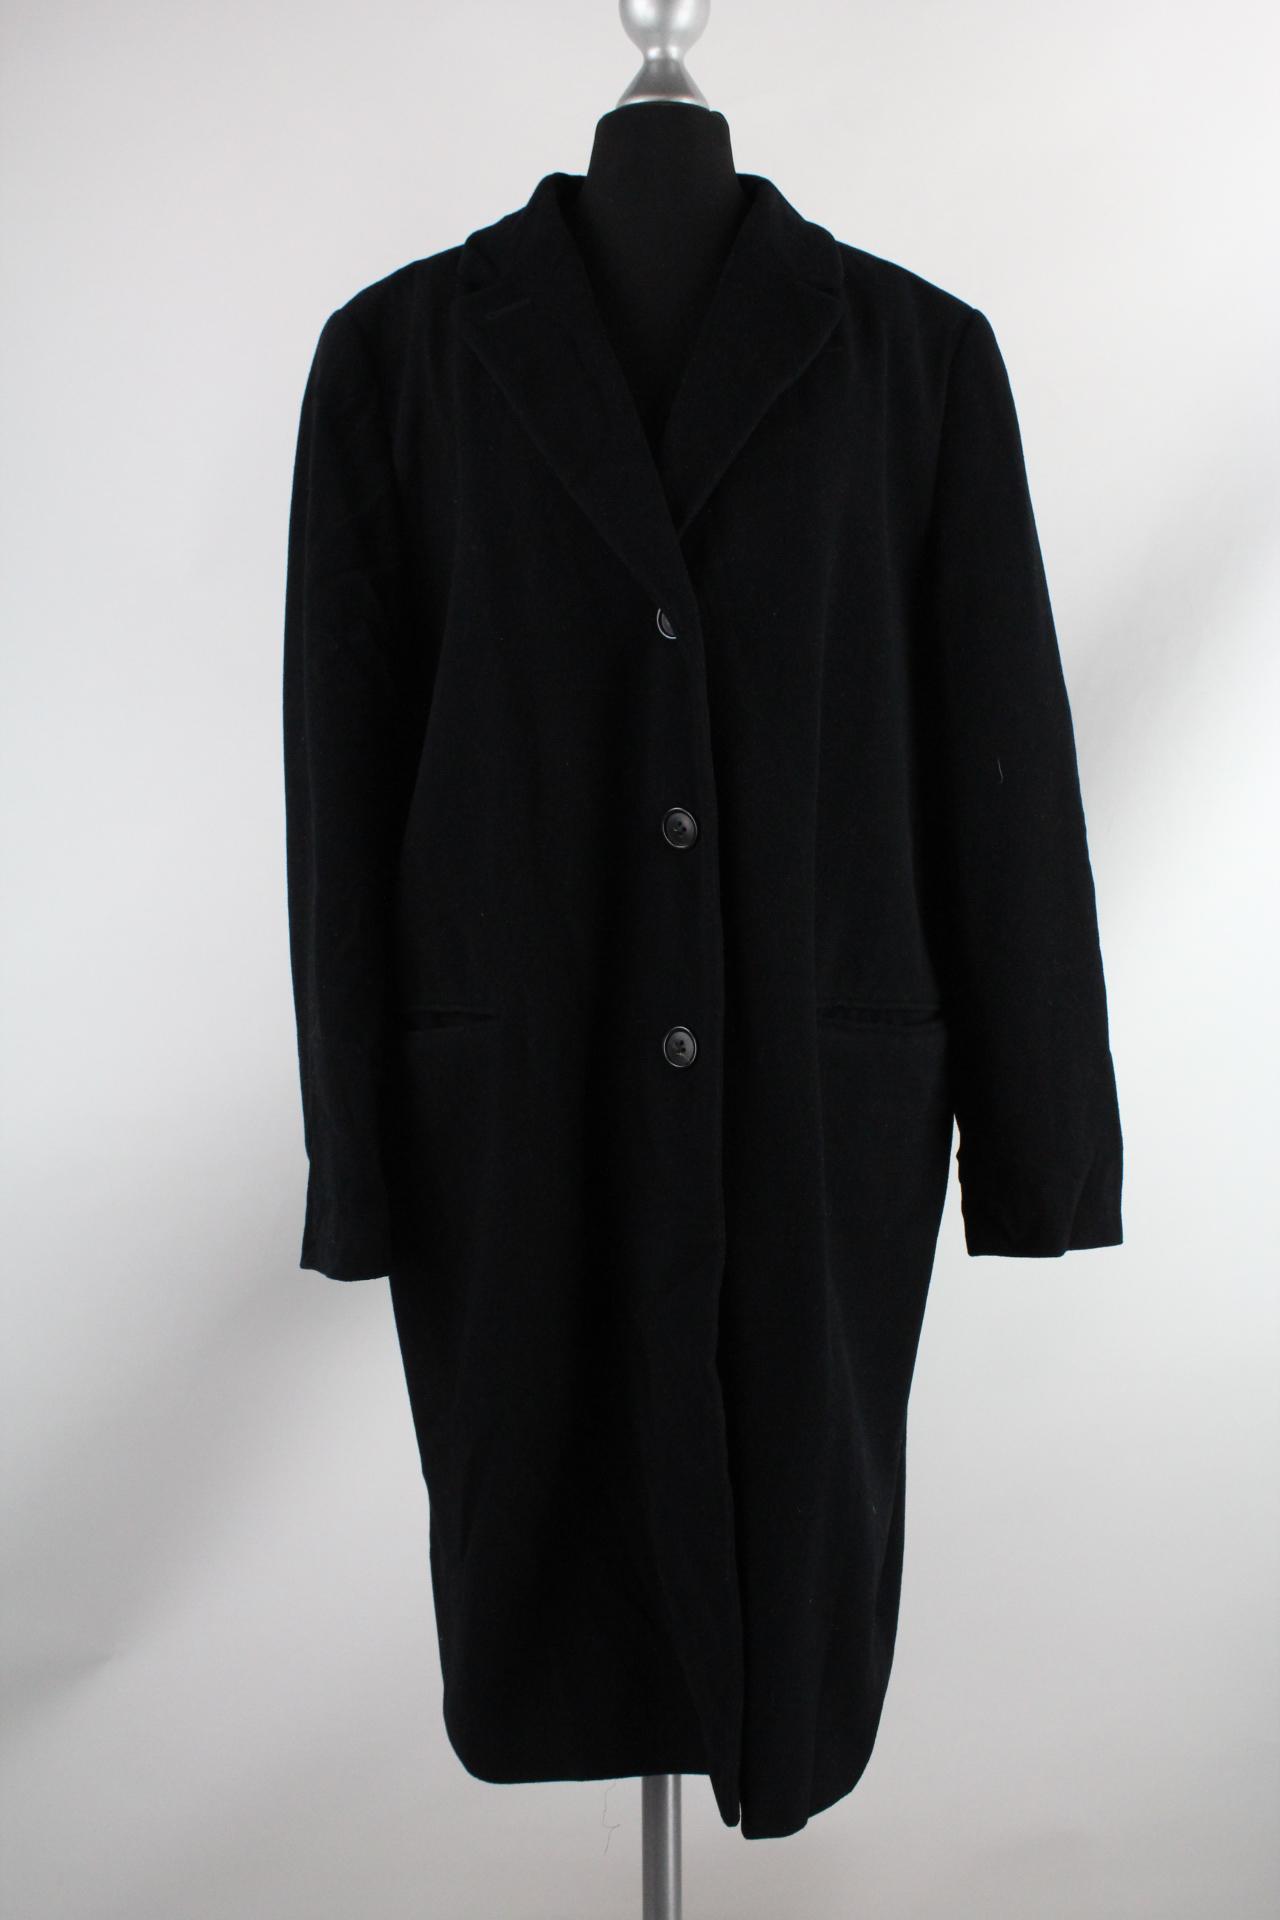 Vittoria Verani Damen-Mantel schwarz Größe 44